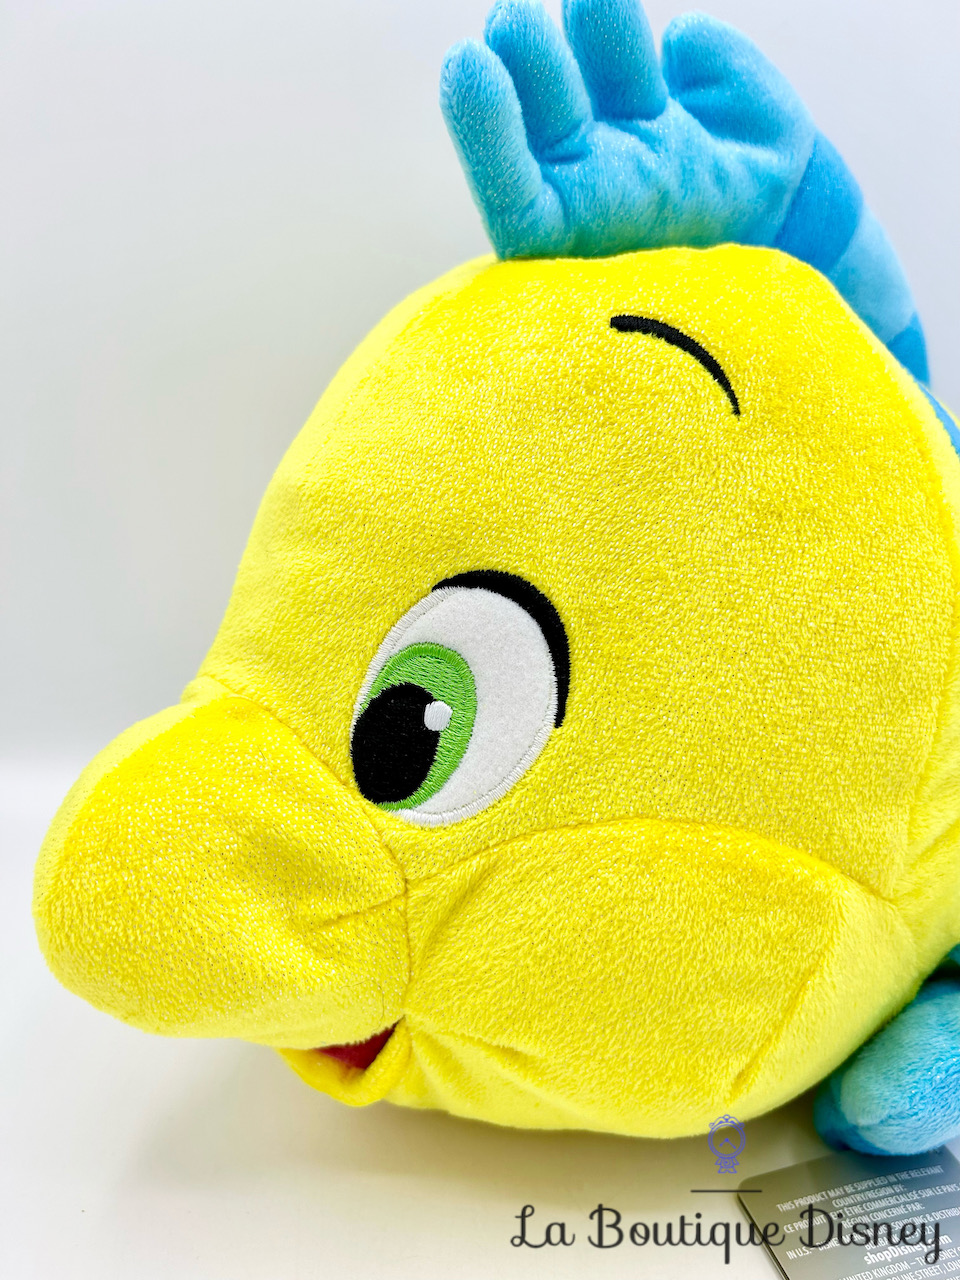 Sac enfant pailleté poisson Polochon – Disney Princess jaune